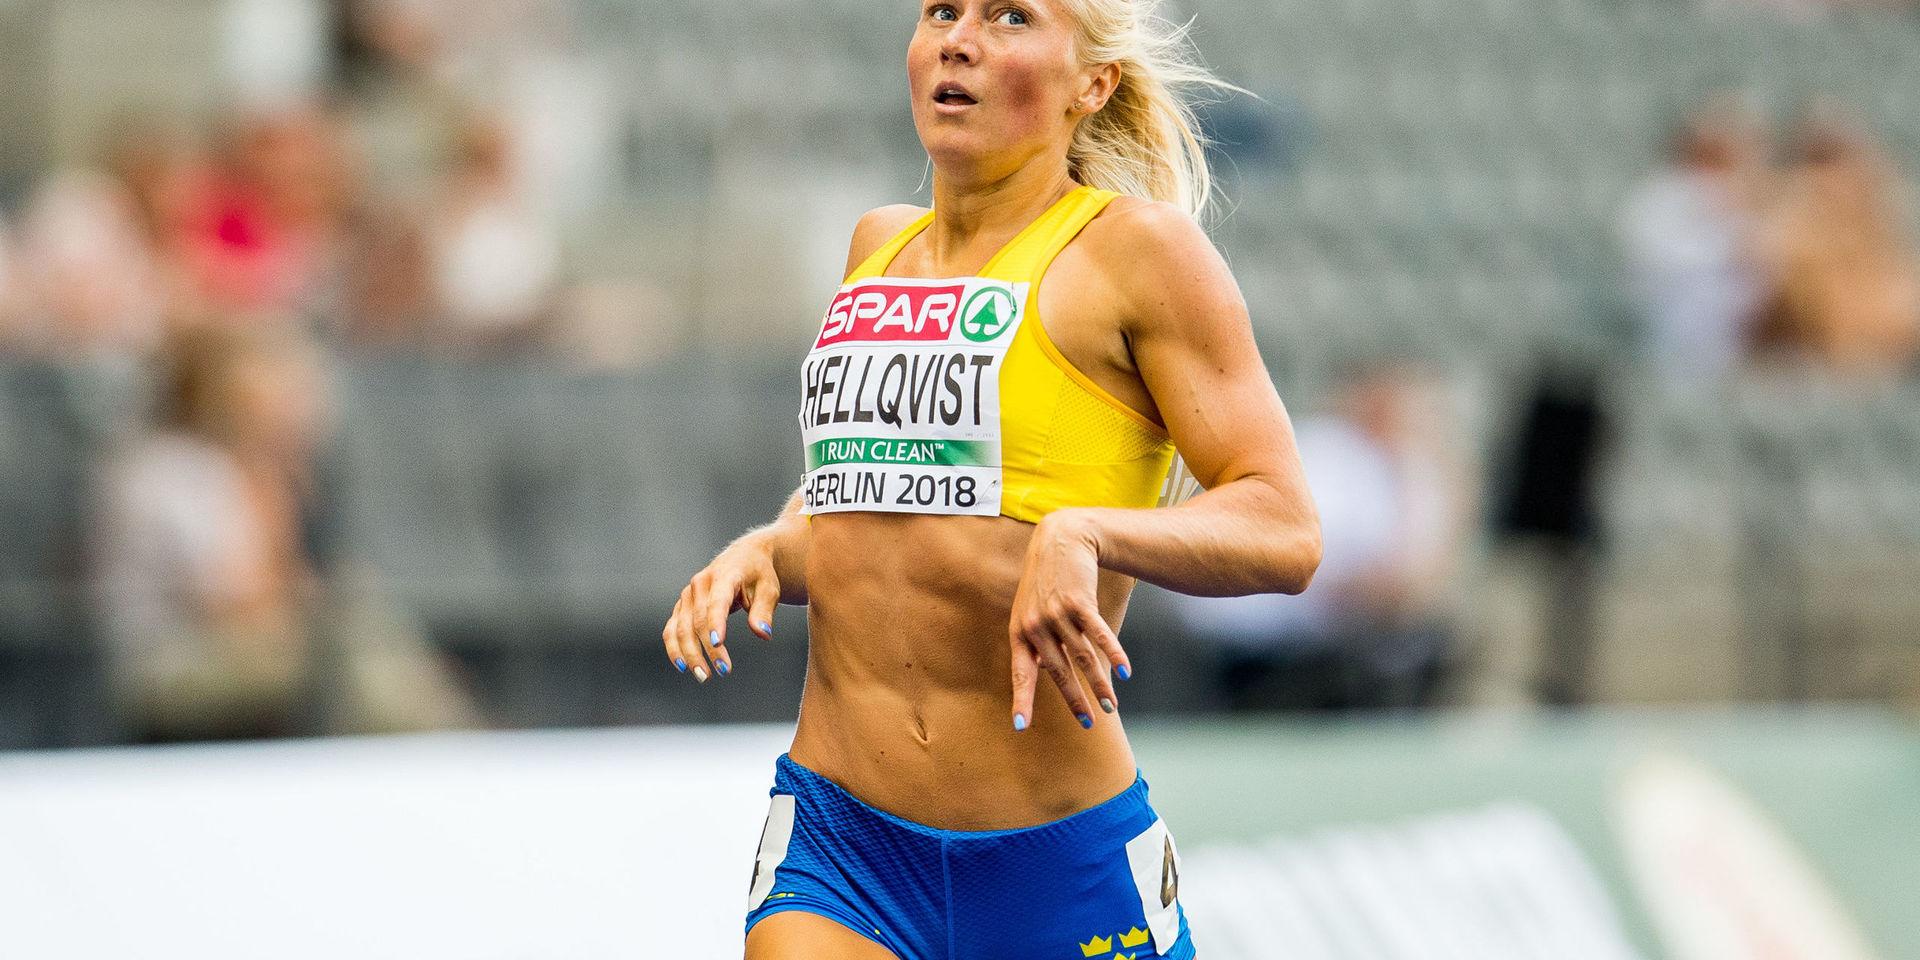 På fredag eftermiddag löper Matilda Hellqvist försöksloppet på 400 meter. Går hon vidare därifrån väntar semifinal samma kväll och eventuell final på lördag. 25-åringen från Uddevalla är fostrad i IK Orient, men tävlar sedan 2014 för Ullevi FK. 